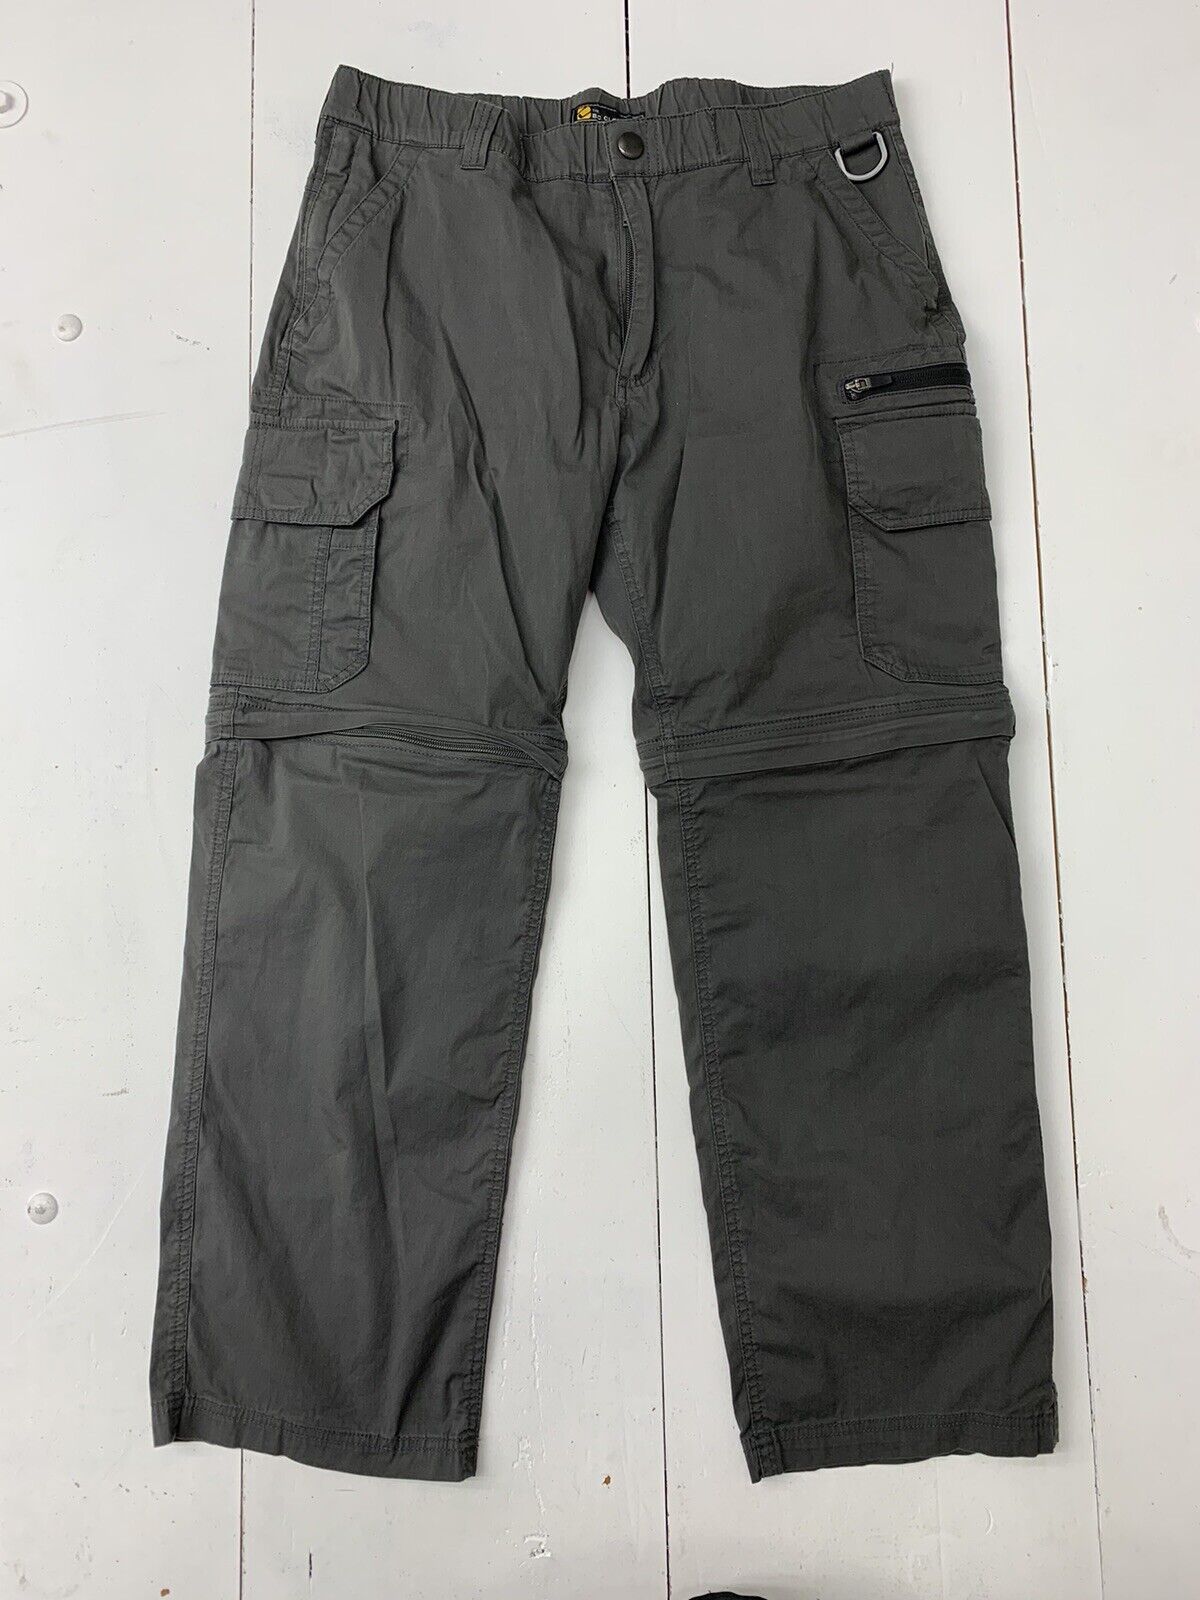 BC Clothing Mens Charcoal Convertible Pants Size 30